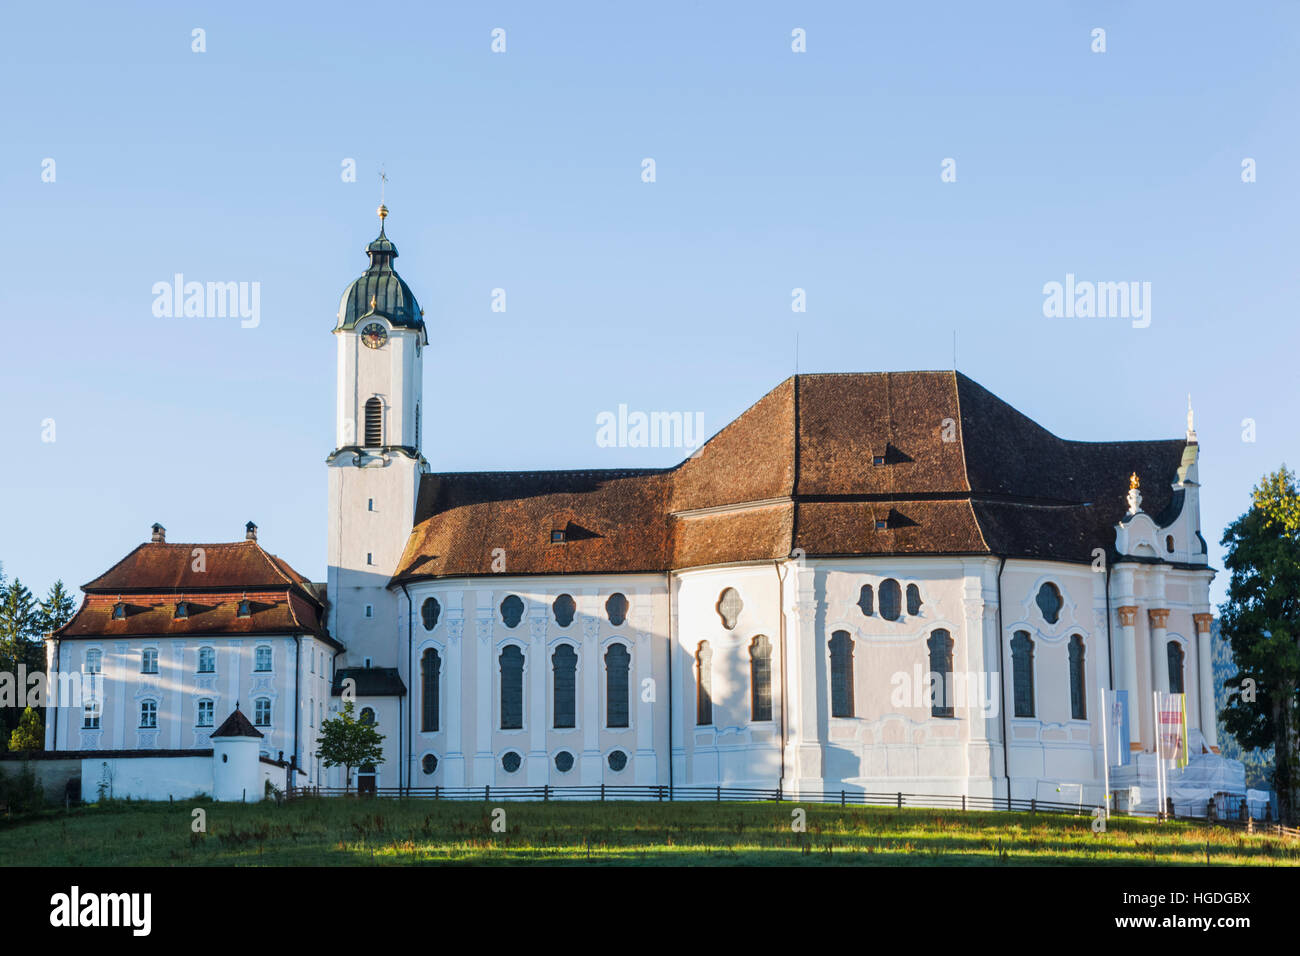 Germany, Bavaria, Allgau, Steingaden, Wieskirche Stock Photo